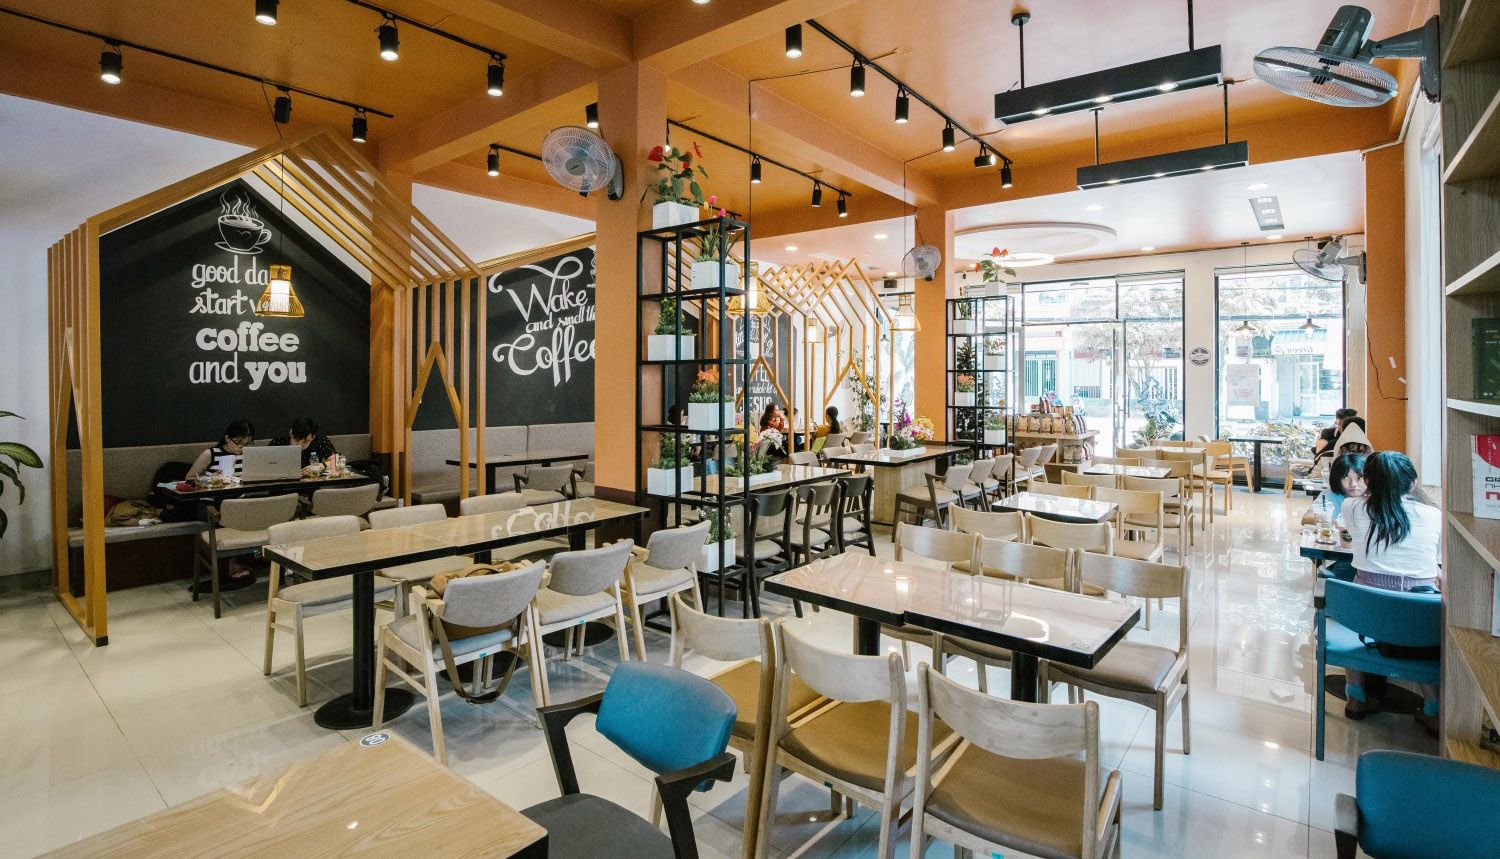 Top tiệm cafe Côn Đảo sở hữu những món nước ngon và không gian xinh xắn nhất định sẽ khiến hội đam mê sống ảo đứng ngồi không yên. Cùng Sakos khám phá hết những quán cà phê siêu xịn sò vào mùa hè này nhé!